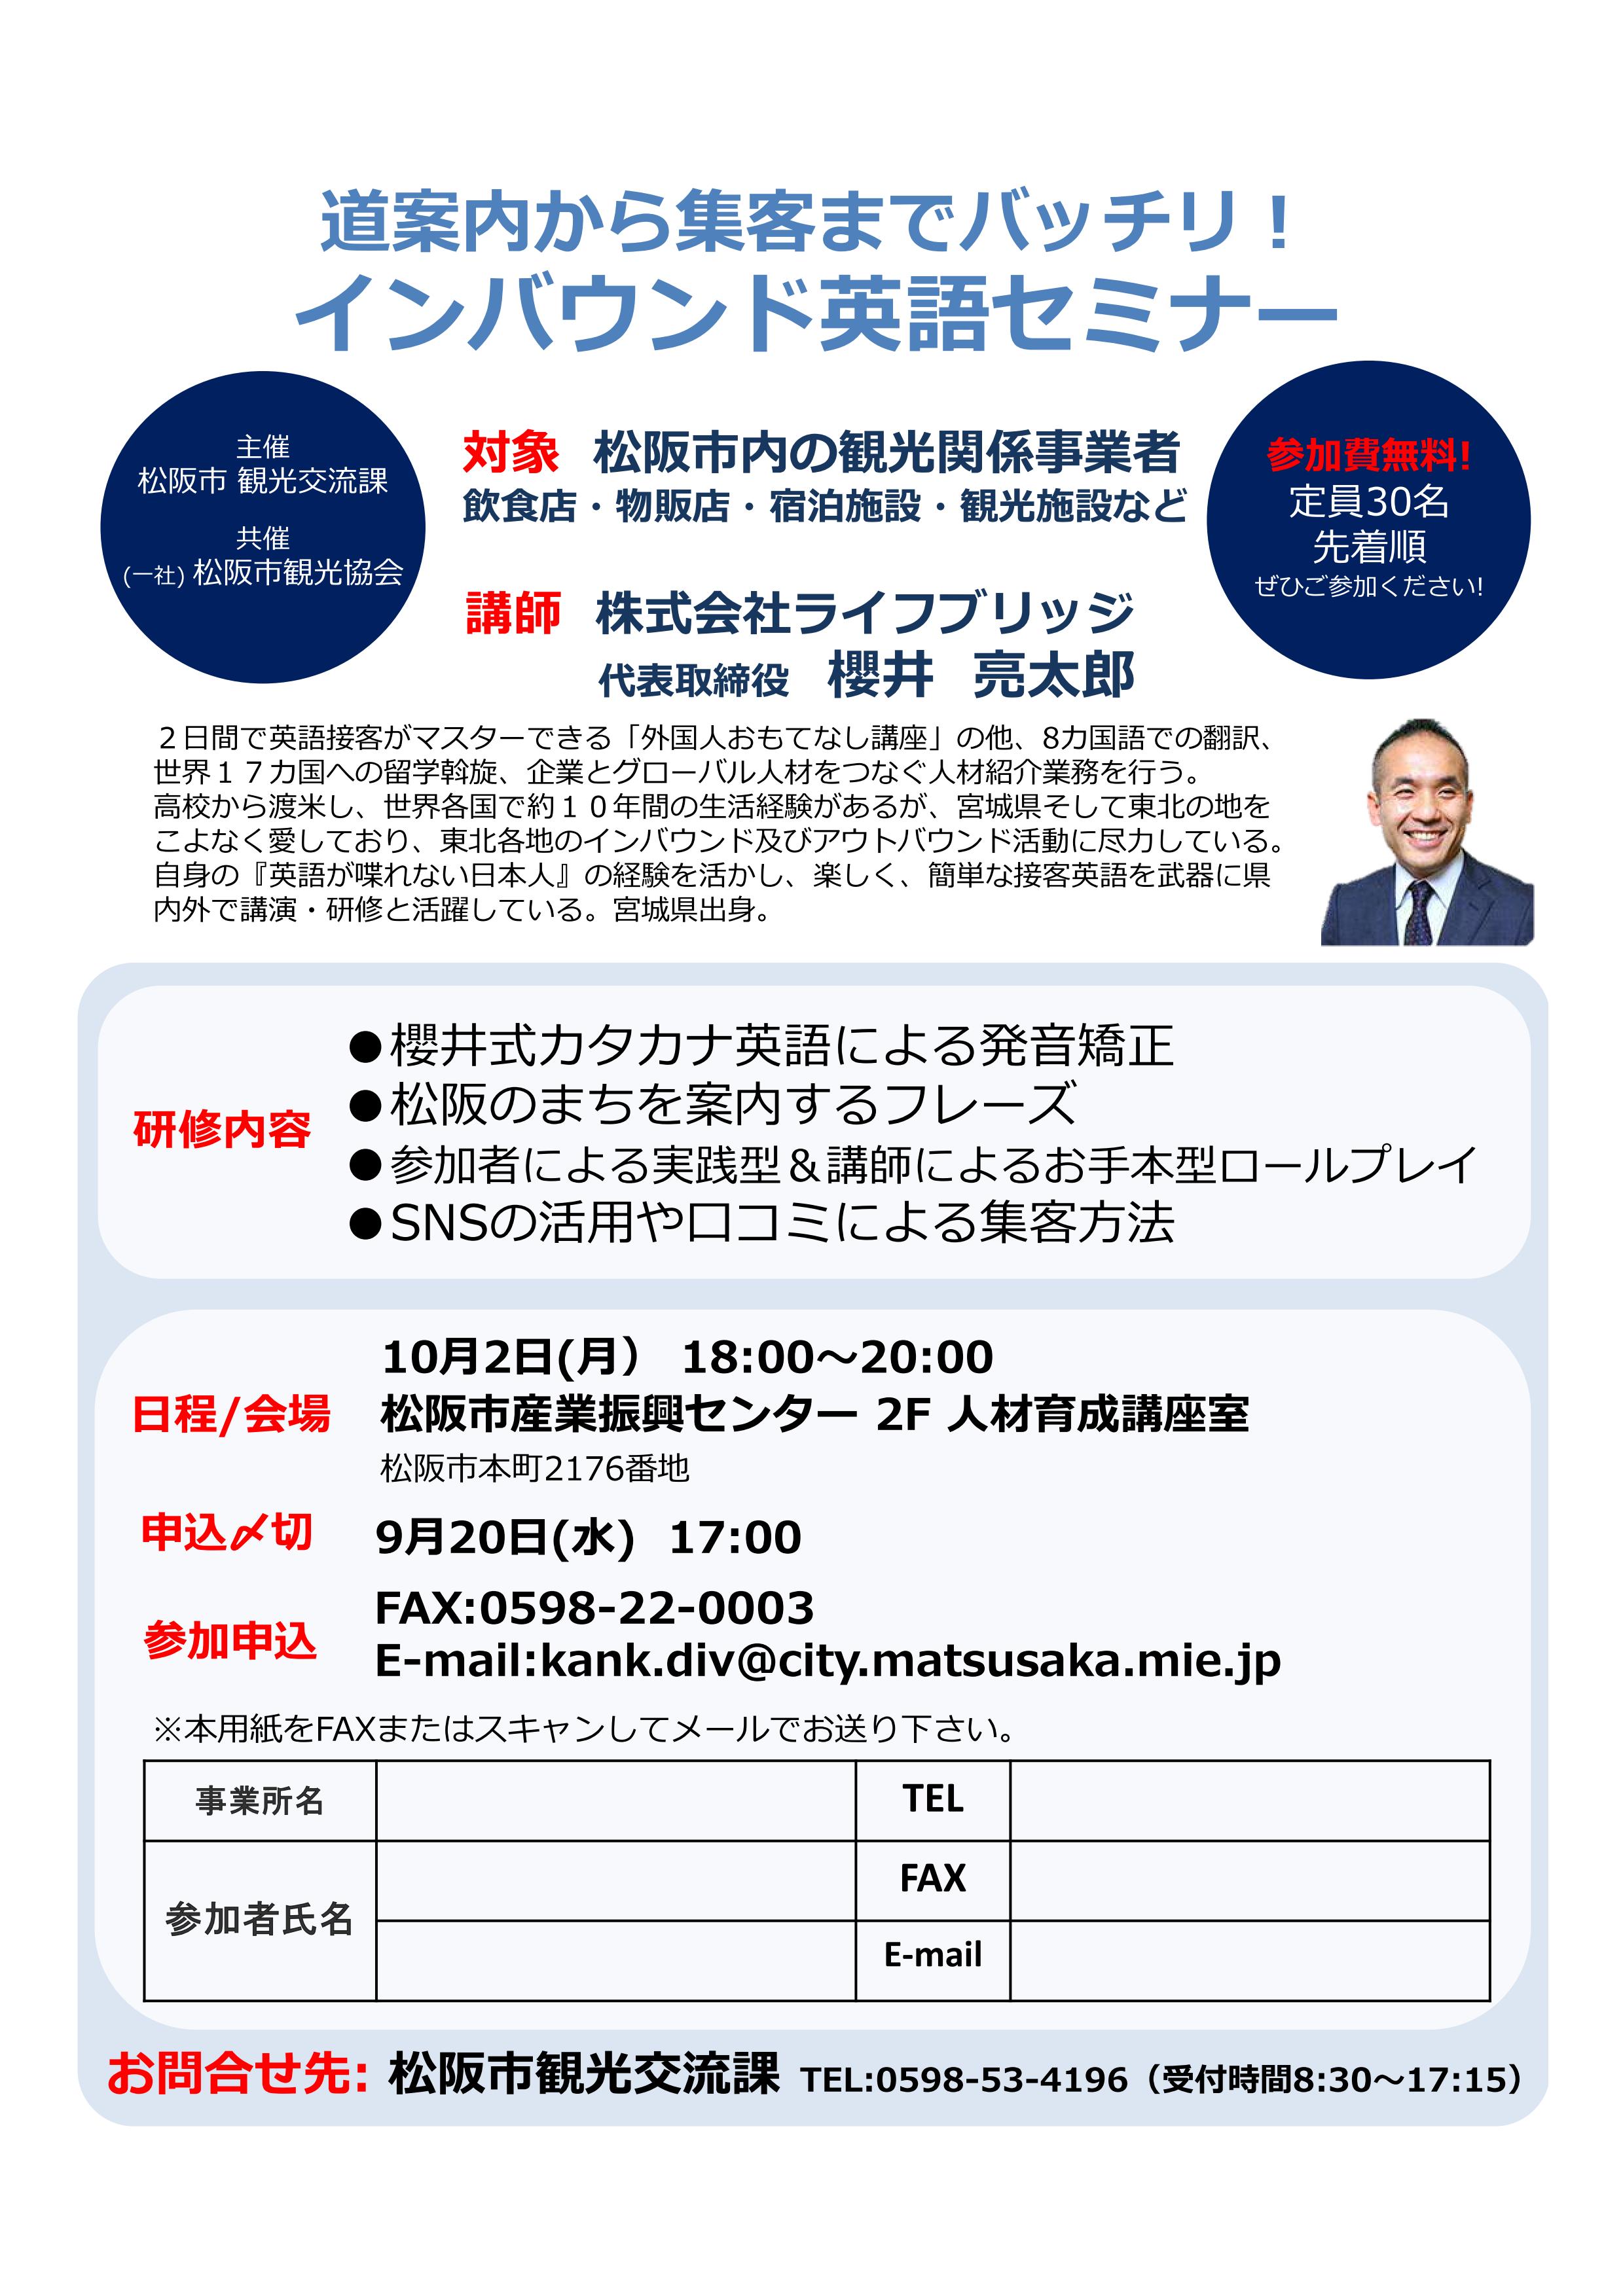 平成29年10月2日 月 道案内から集客までバッチリ インバウンド英語セミナー を開催します 松阪市観光協会